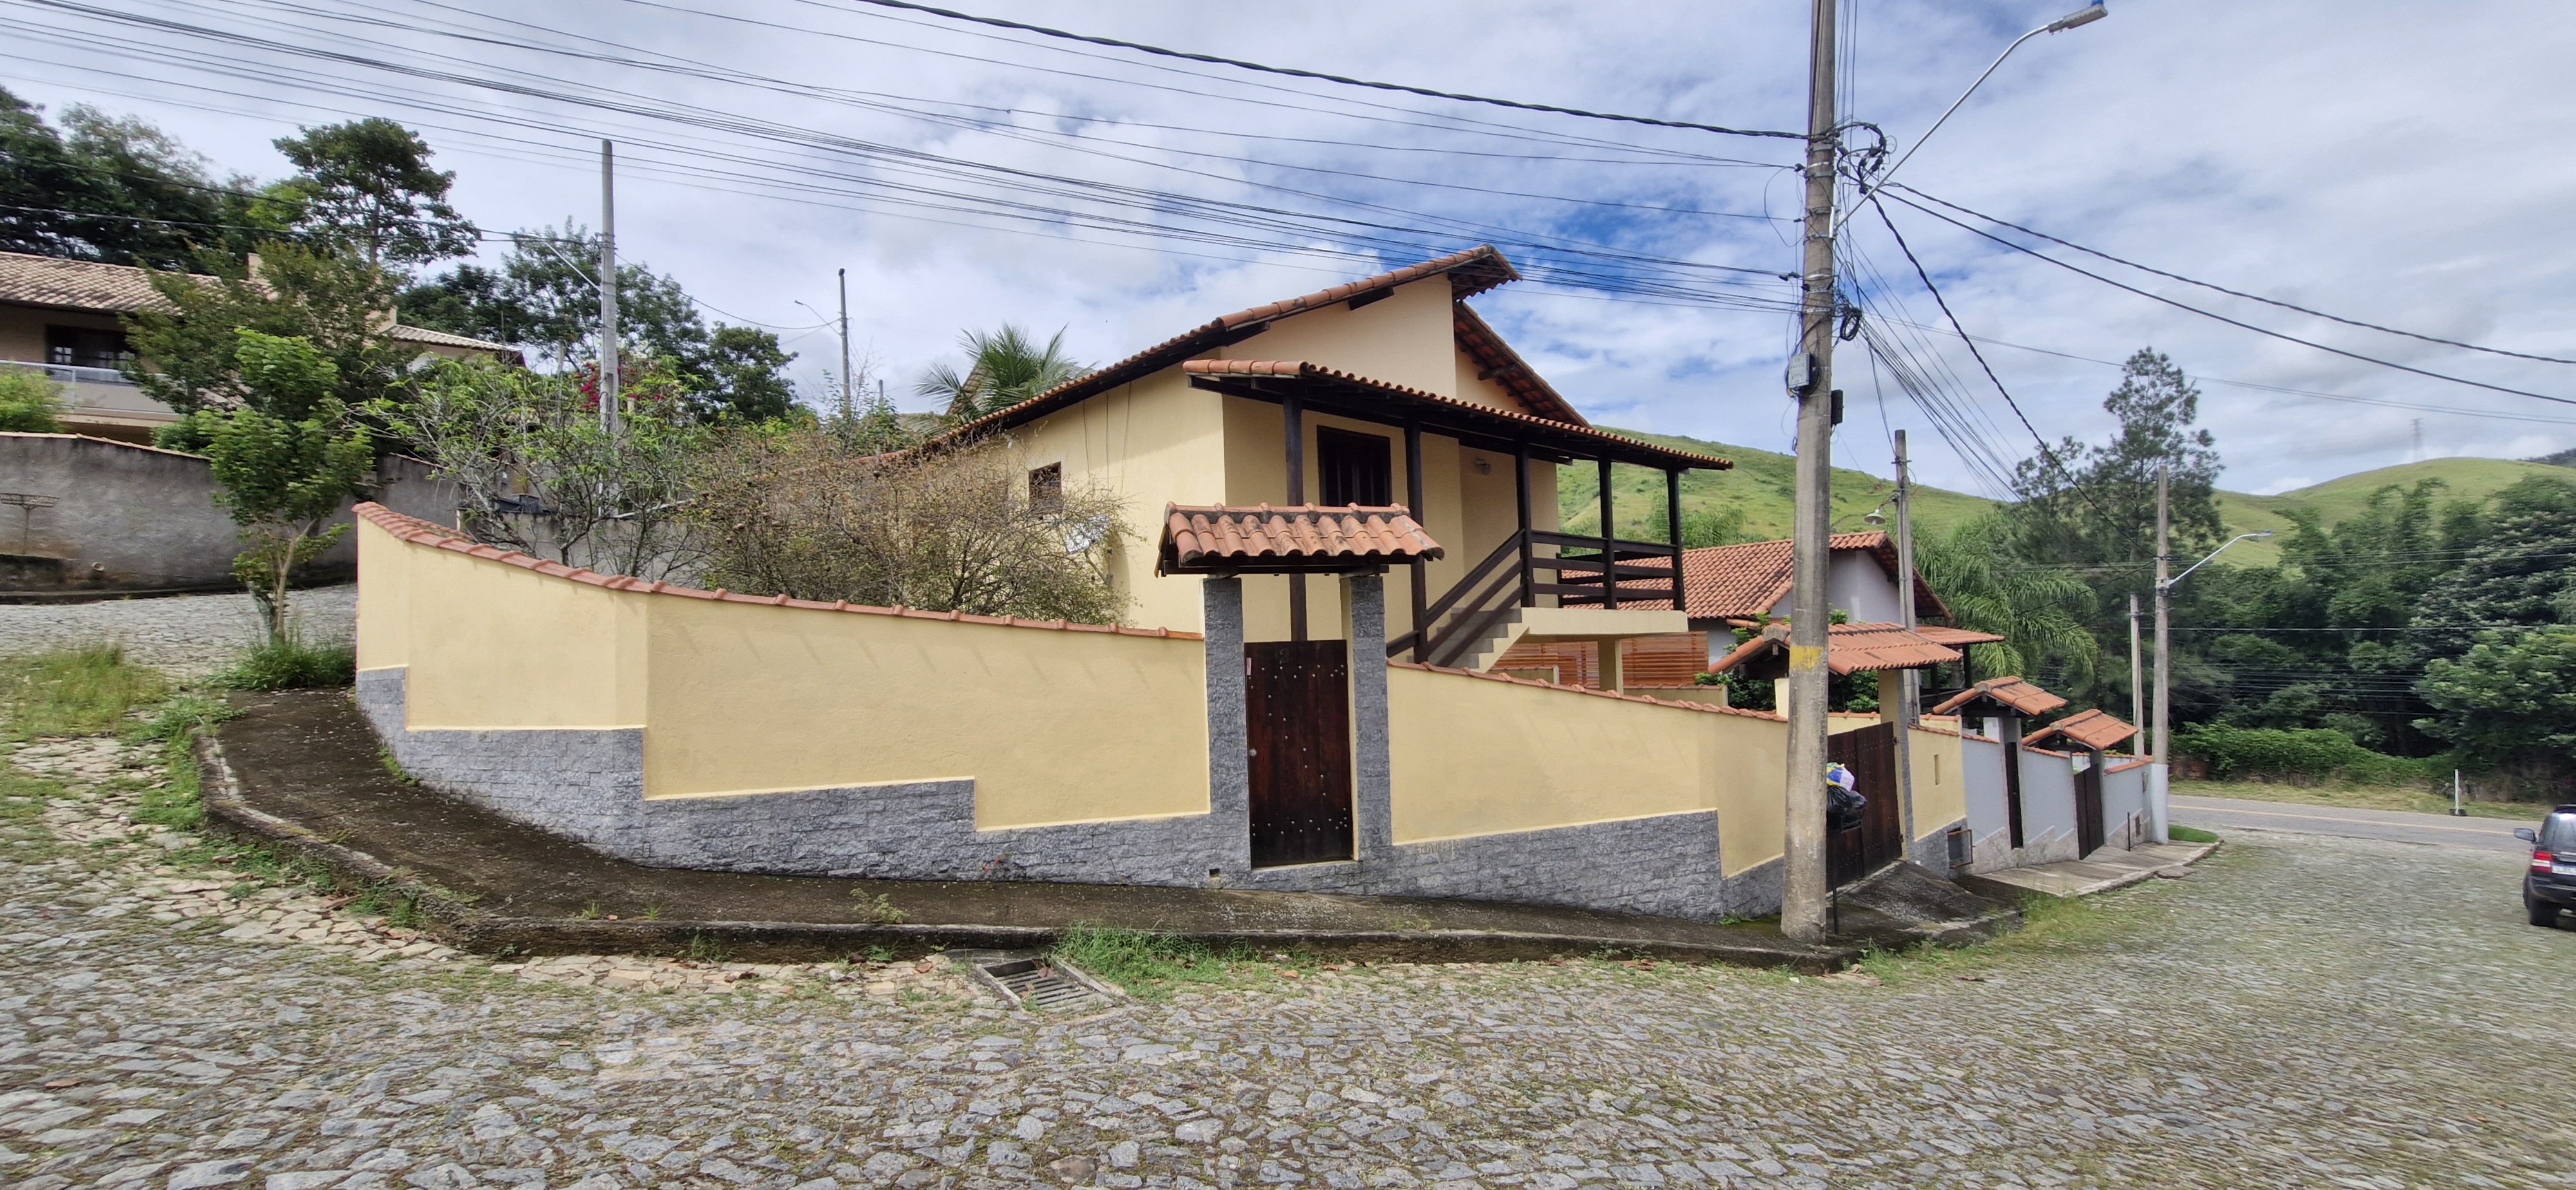 Casa - Locação, MATADOURO, Vassouras, RJ